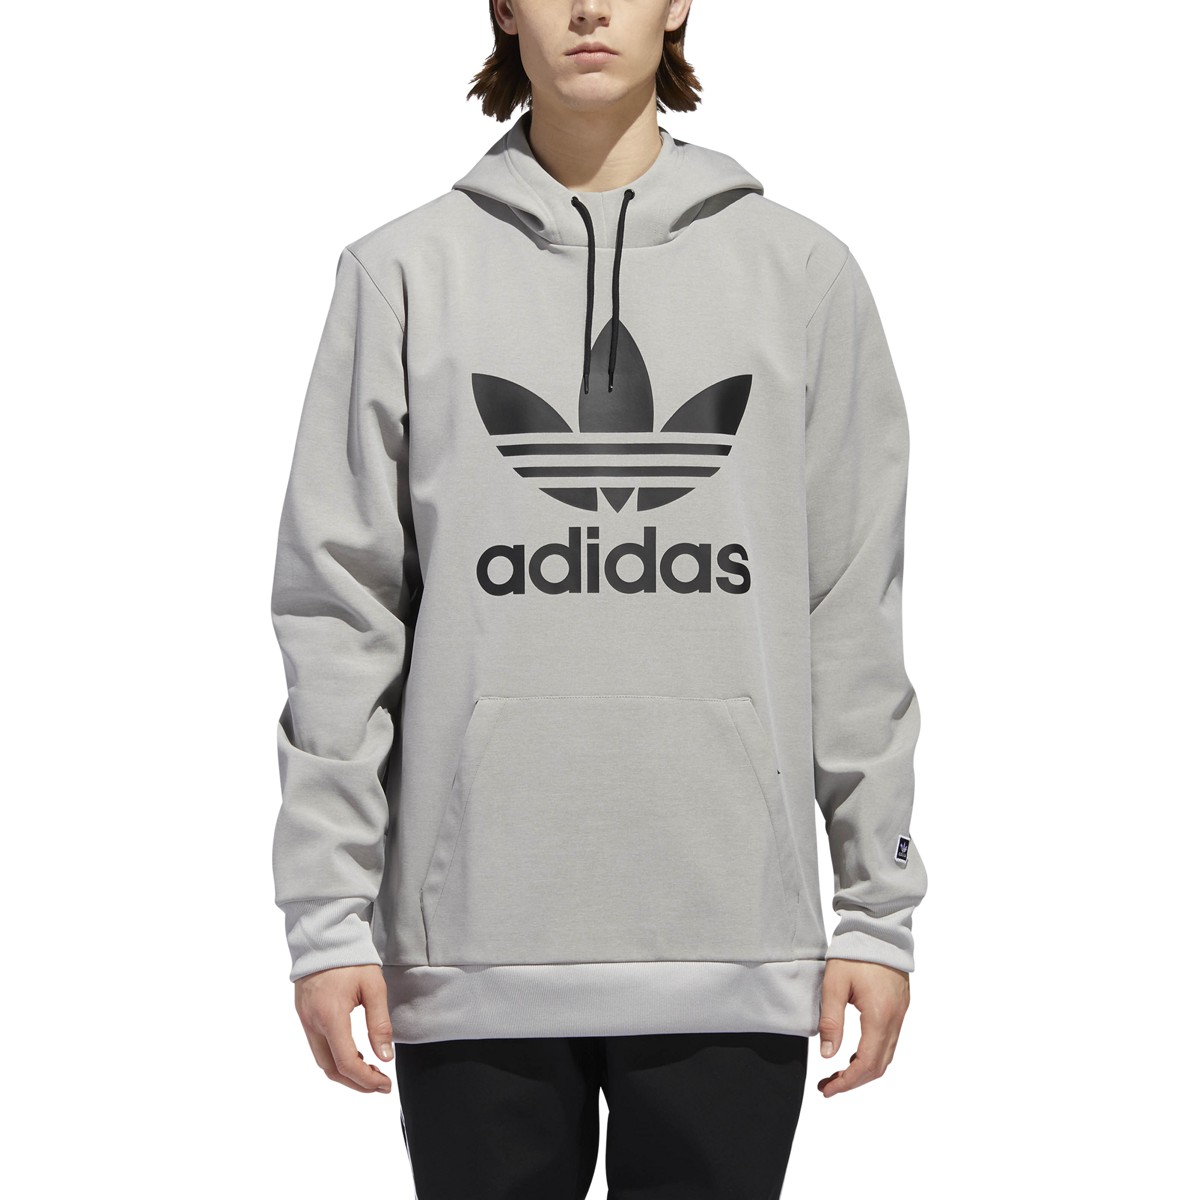 grey and black adidas hoodie